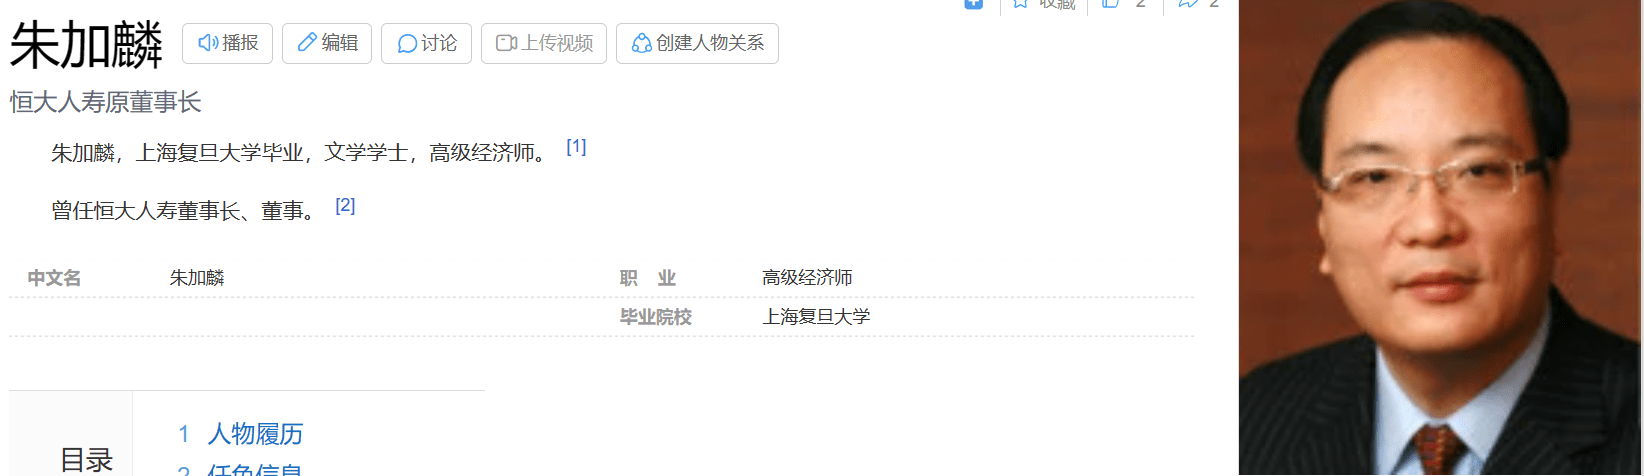 必博体育app官方网站